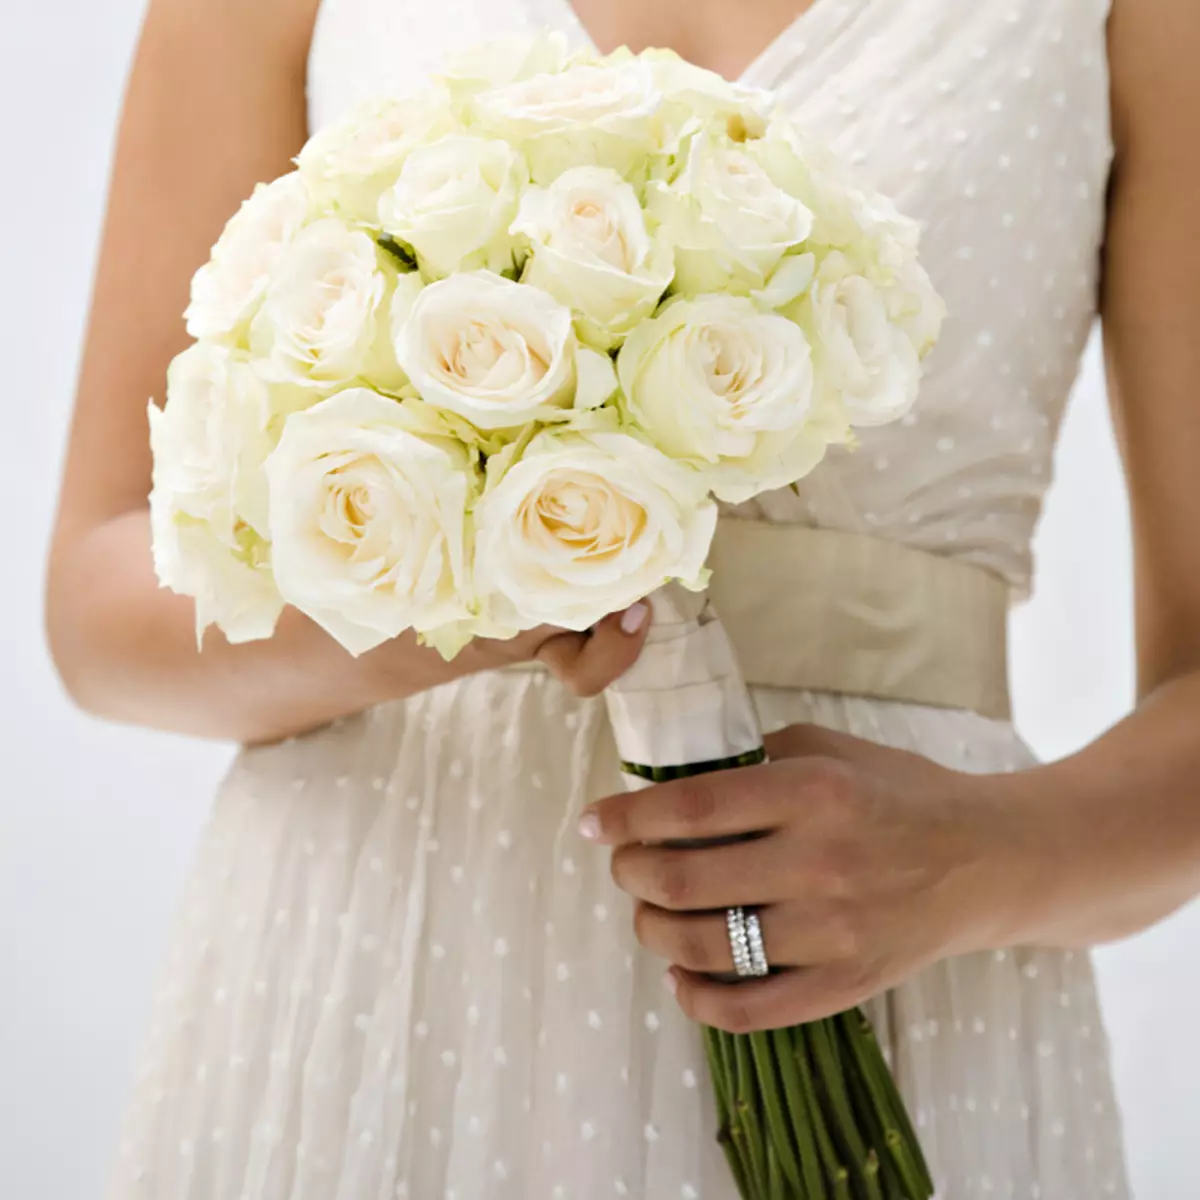 Menyasszonyi csokor rózsa (74 fotók): Esküvői készítmények készült rózsa fehér eustomas, kék freesies és piros alstromeries 8005_48